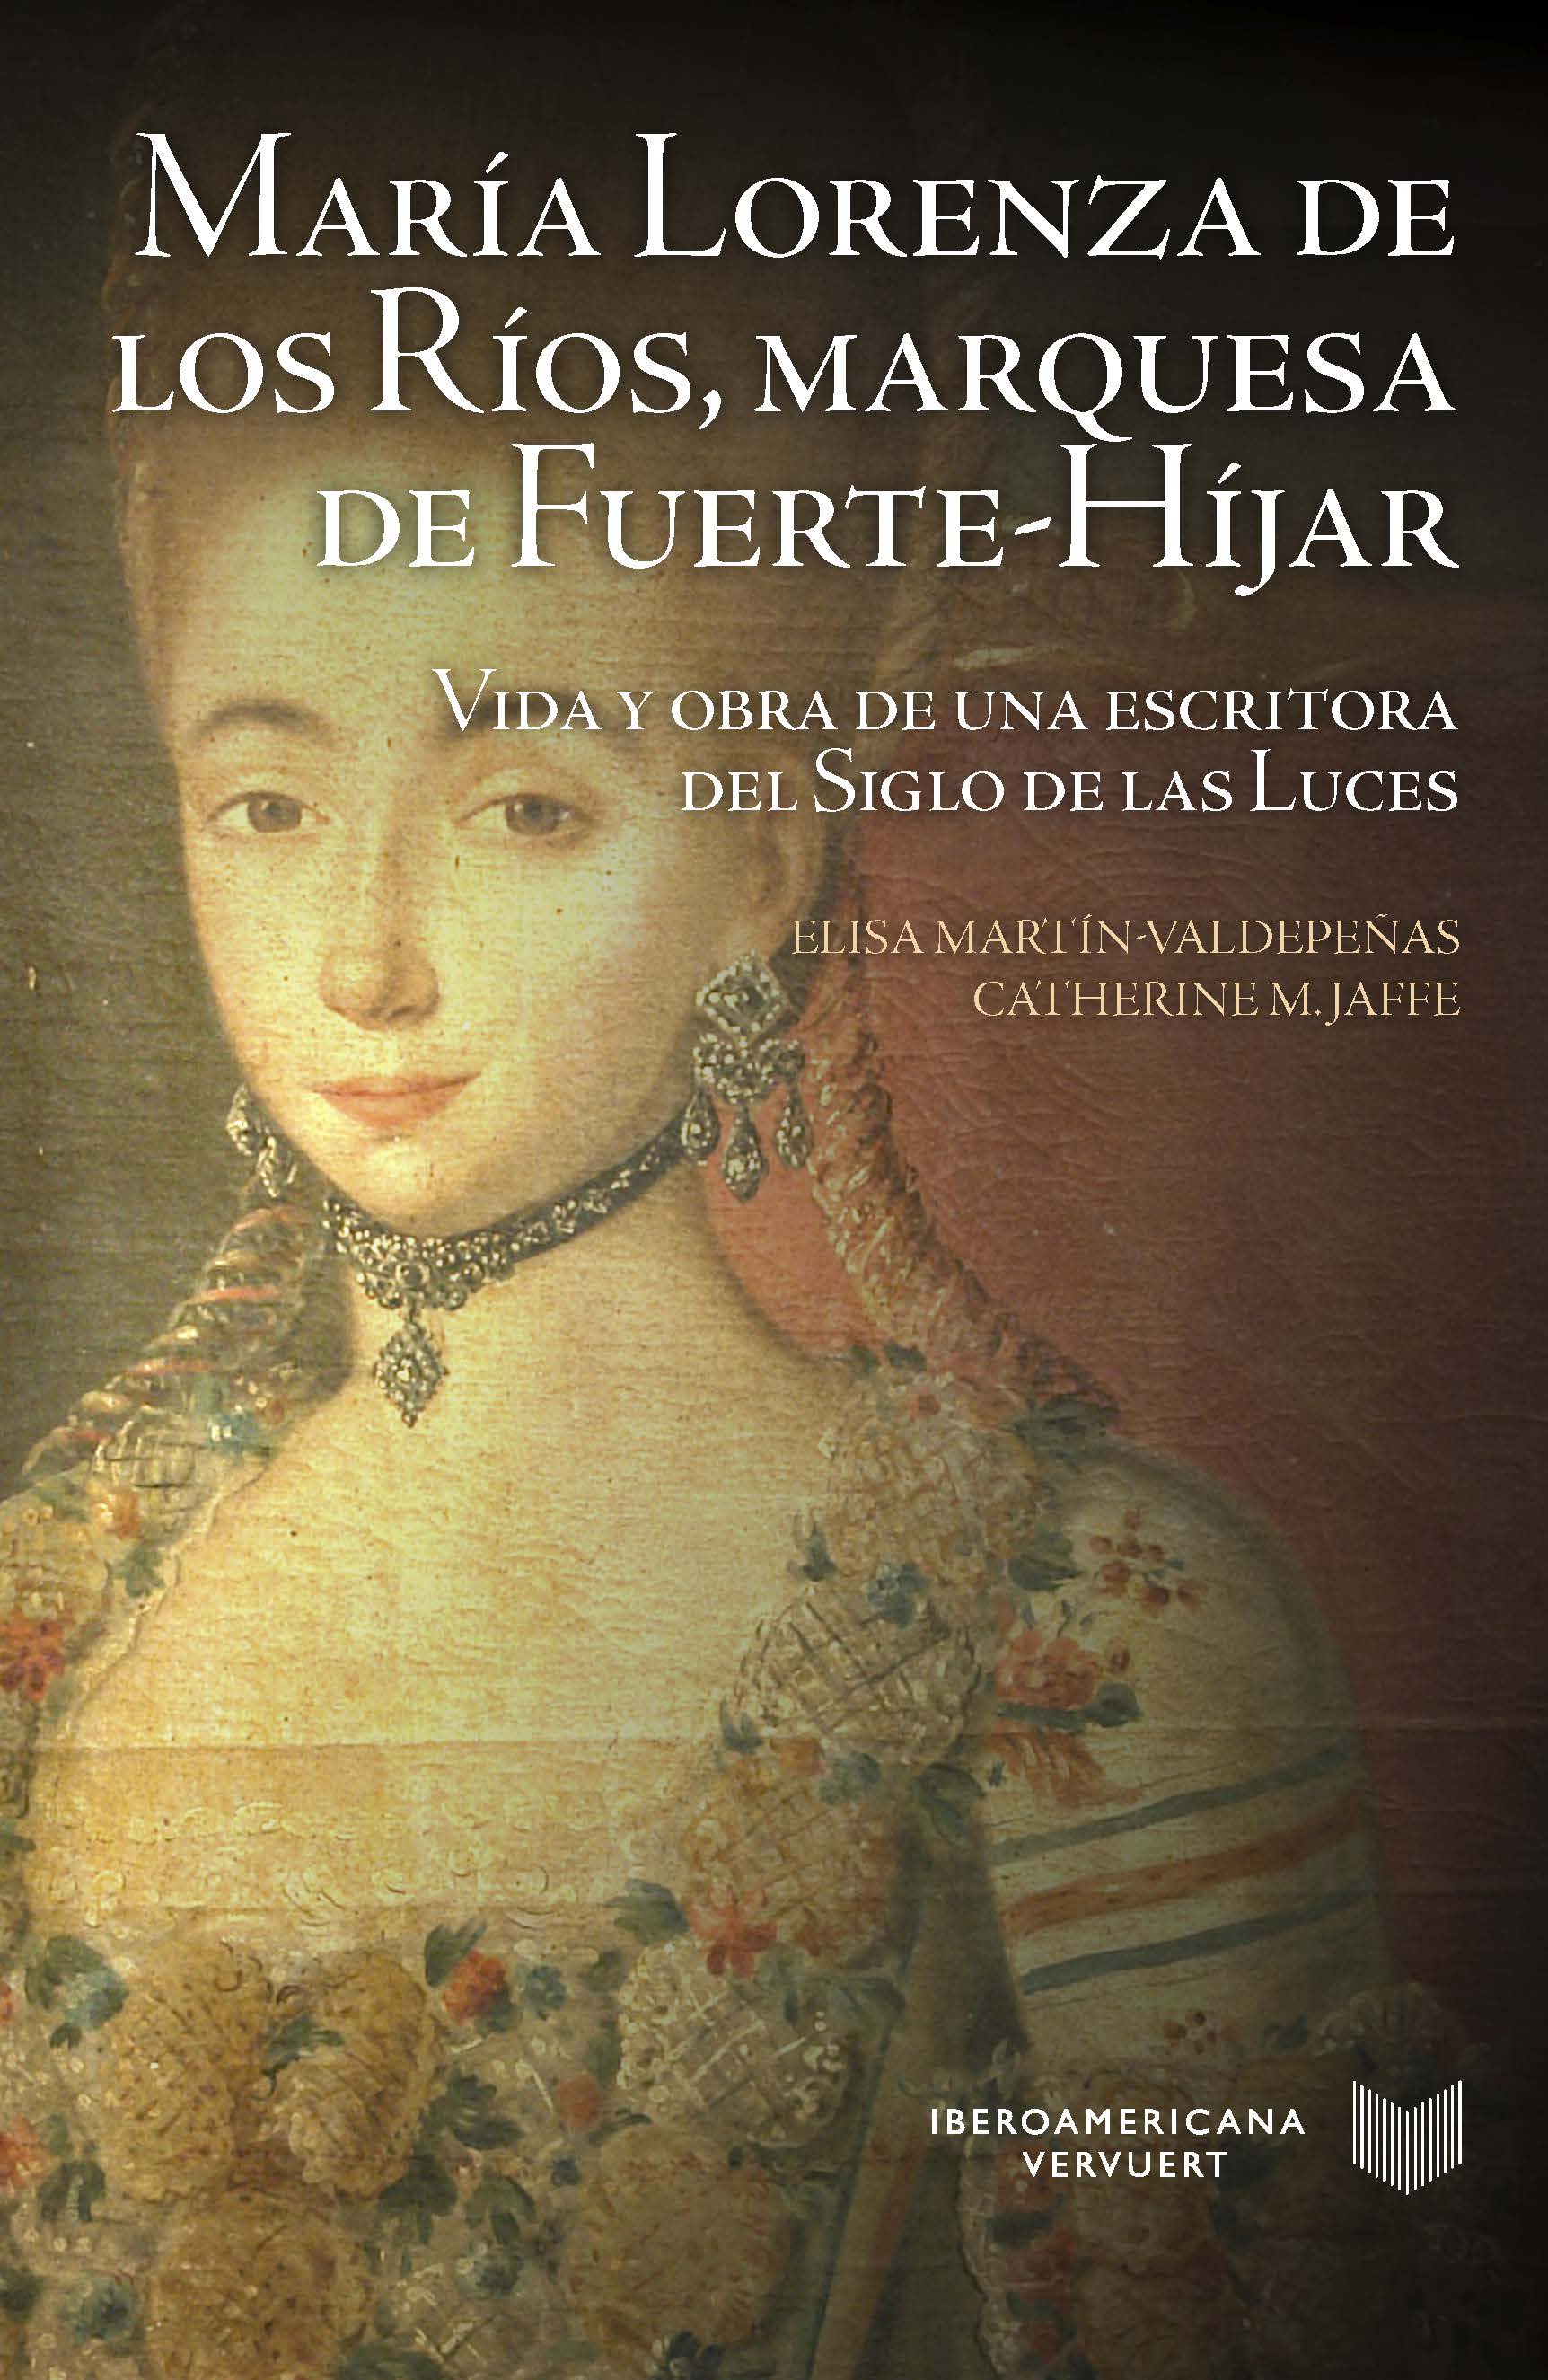 María Lorenza de los Ríos, marquesa de Fuerte-Híjar. 9788491920144